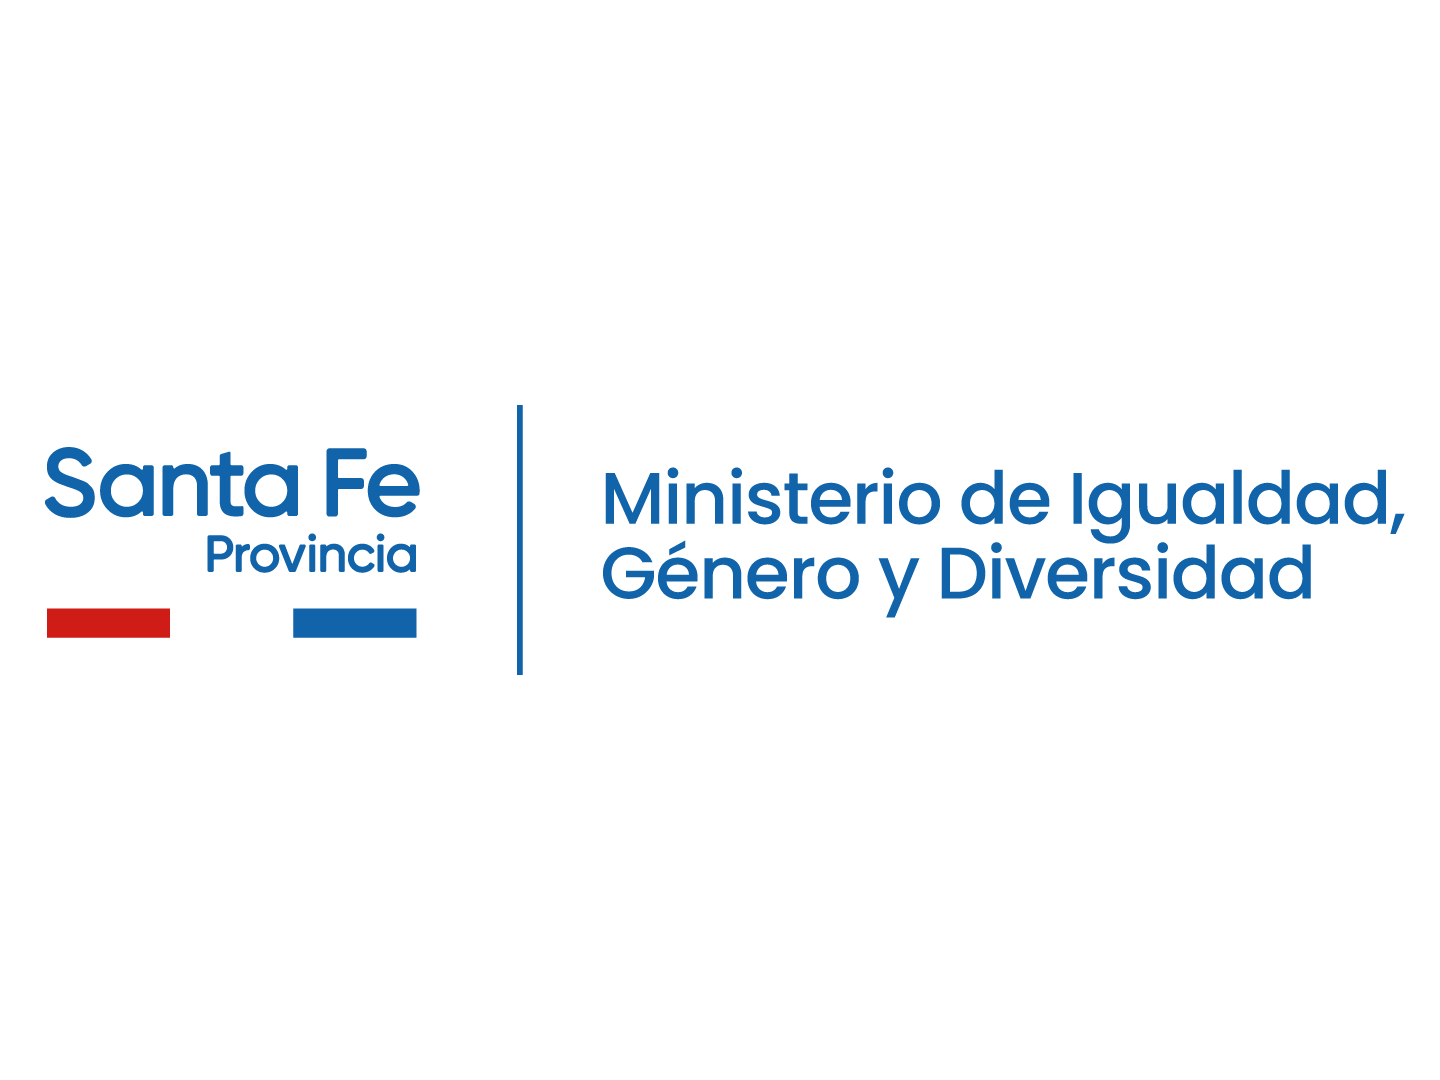 Ministerio de Igualdad, Género y Diversidad